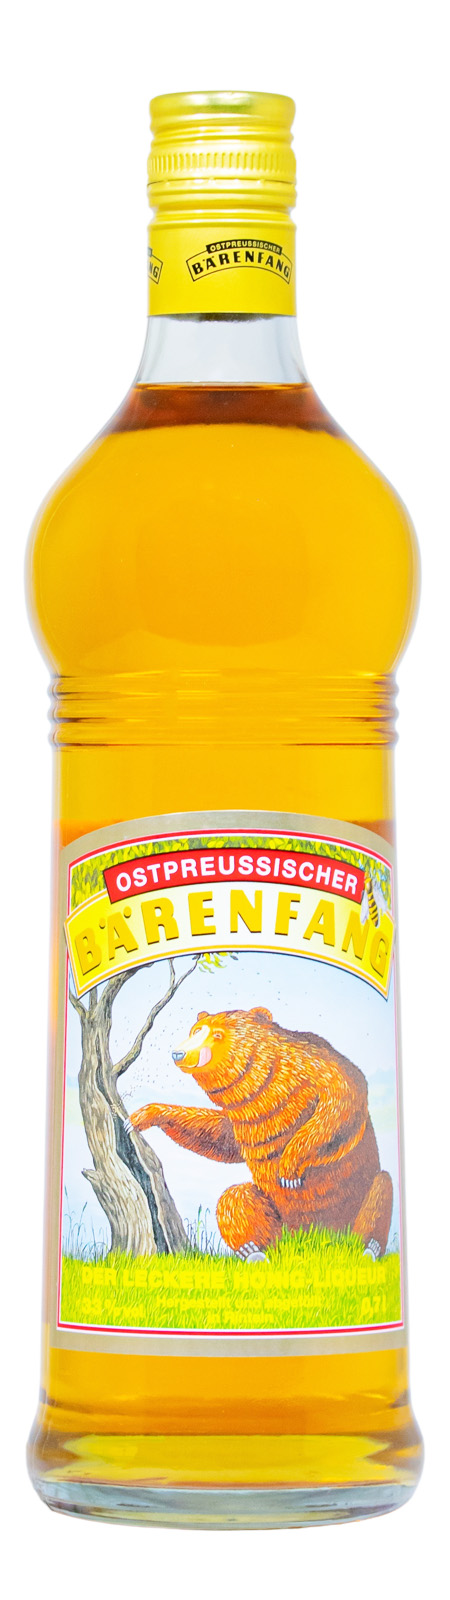 Ostpreußischer Bärenfang - 0,7L 33% vol